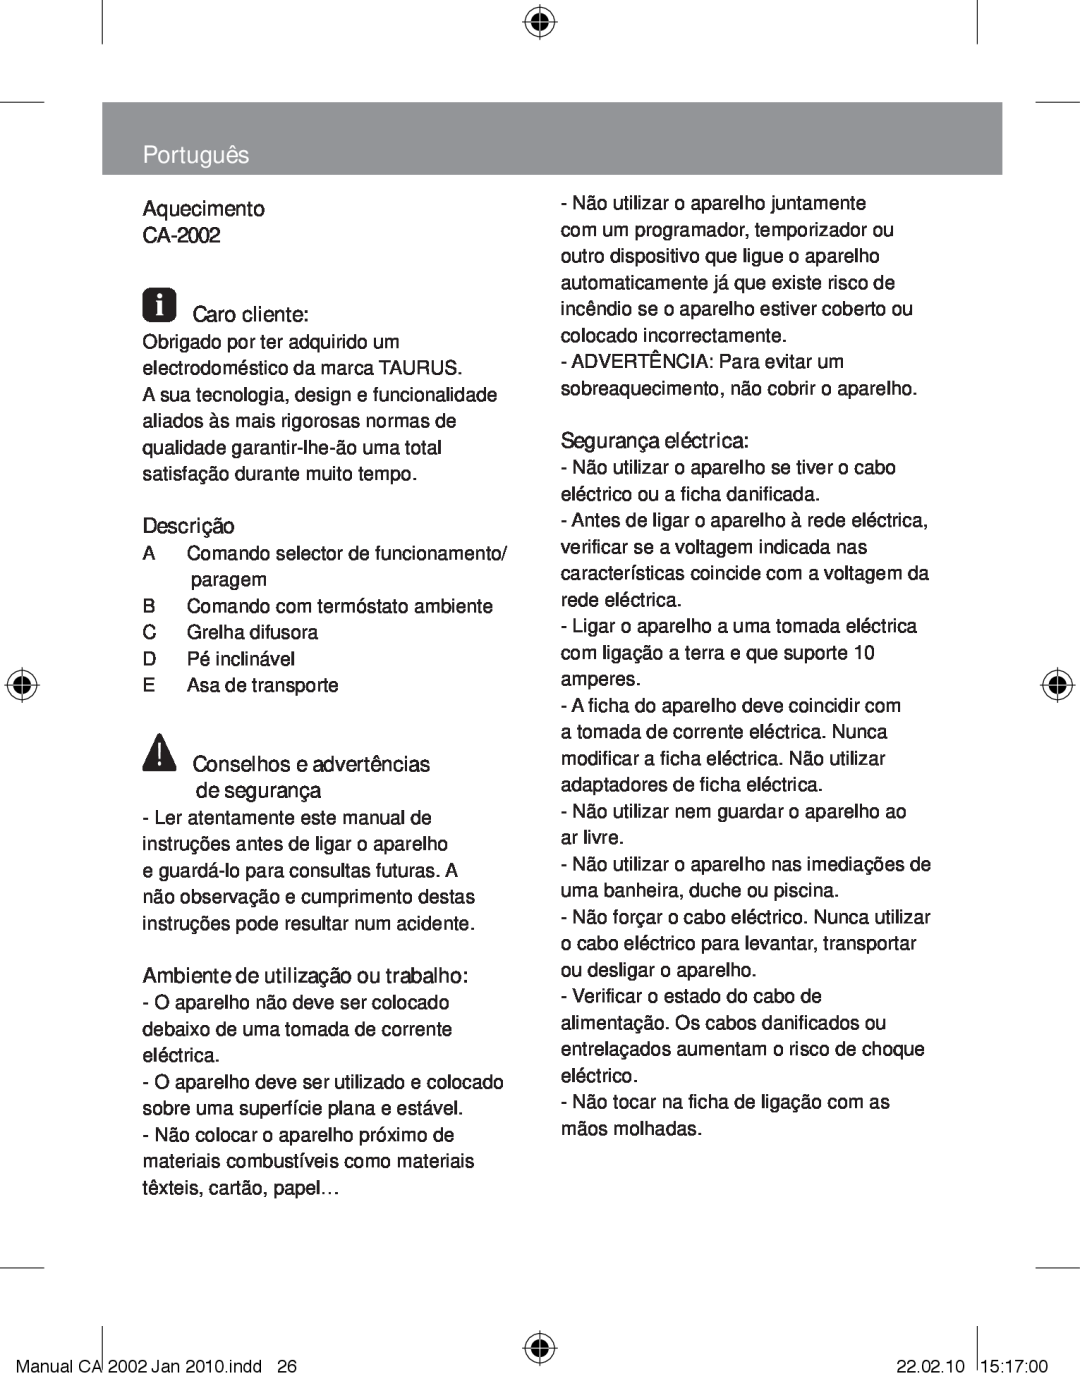 Taurus Group manual Português, Aquecimento CA-2002 Caro cliente, Descrição, Ambiente de utilização ou trabalho 